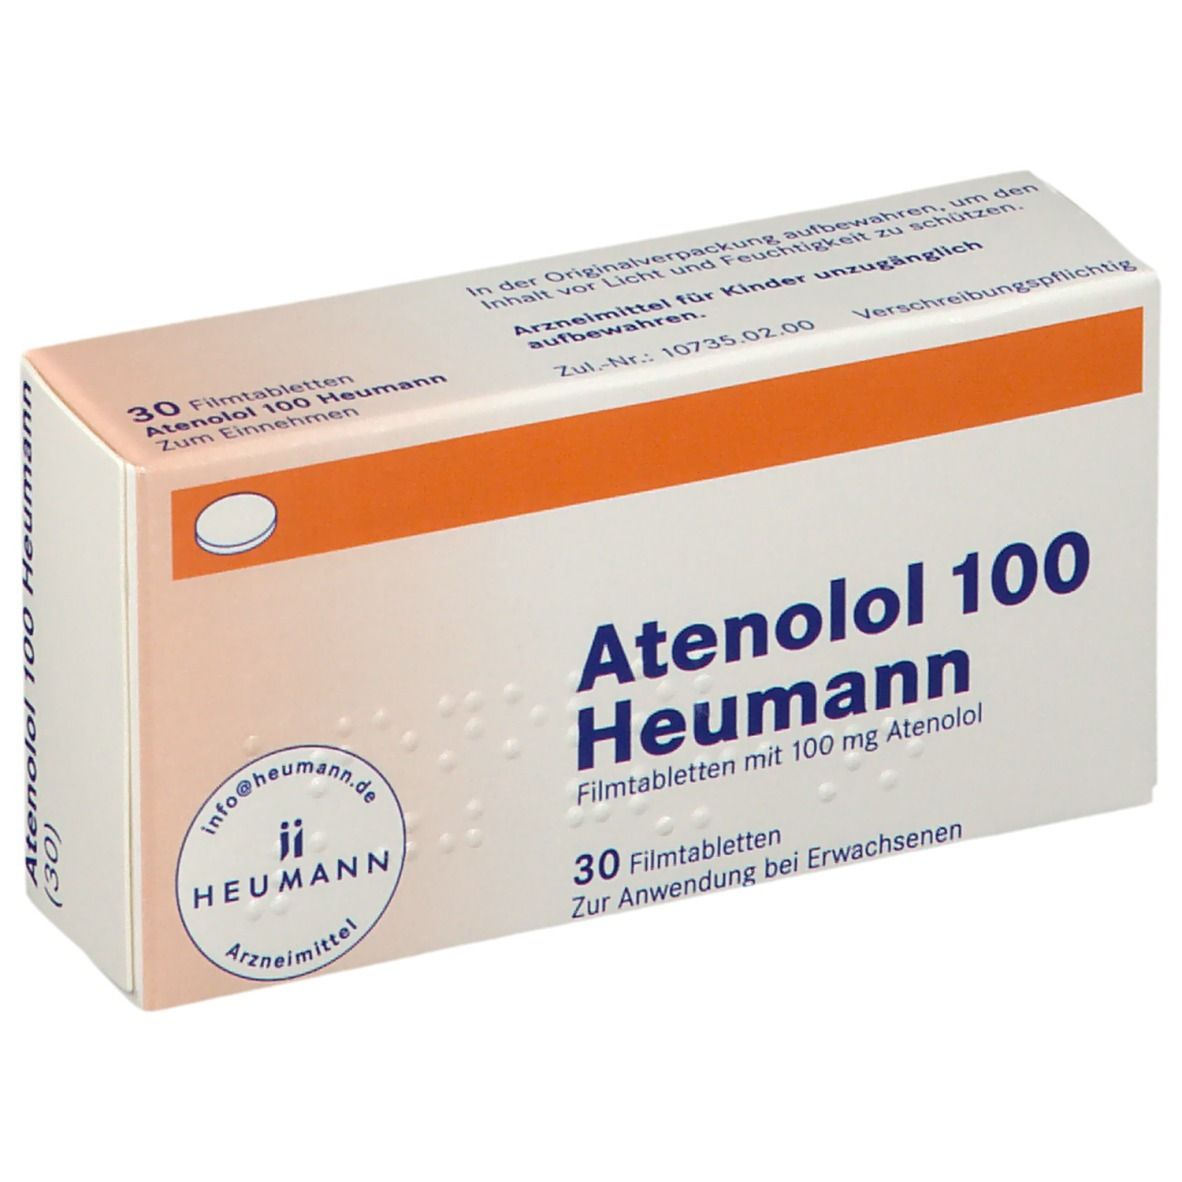 Atenolol 100 Heumann®